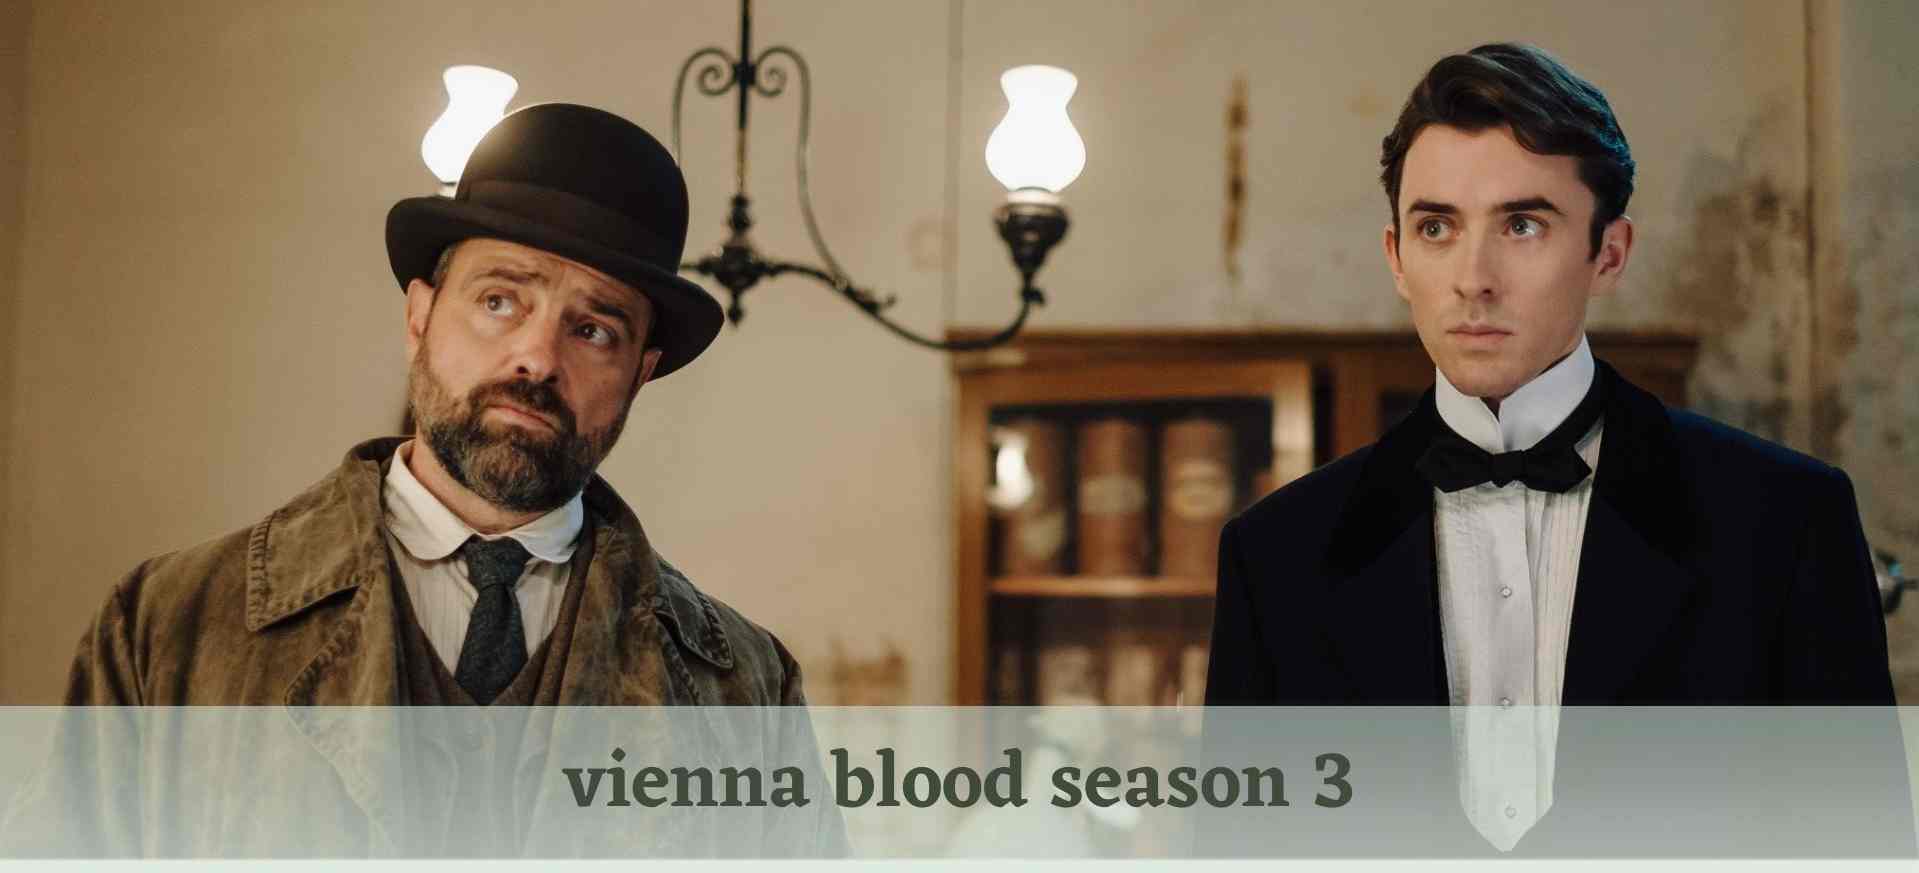 vienna blood season 3